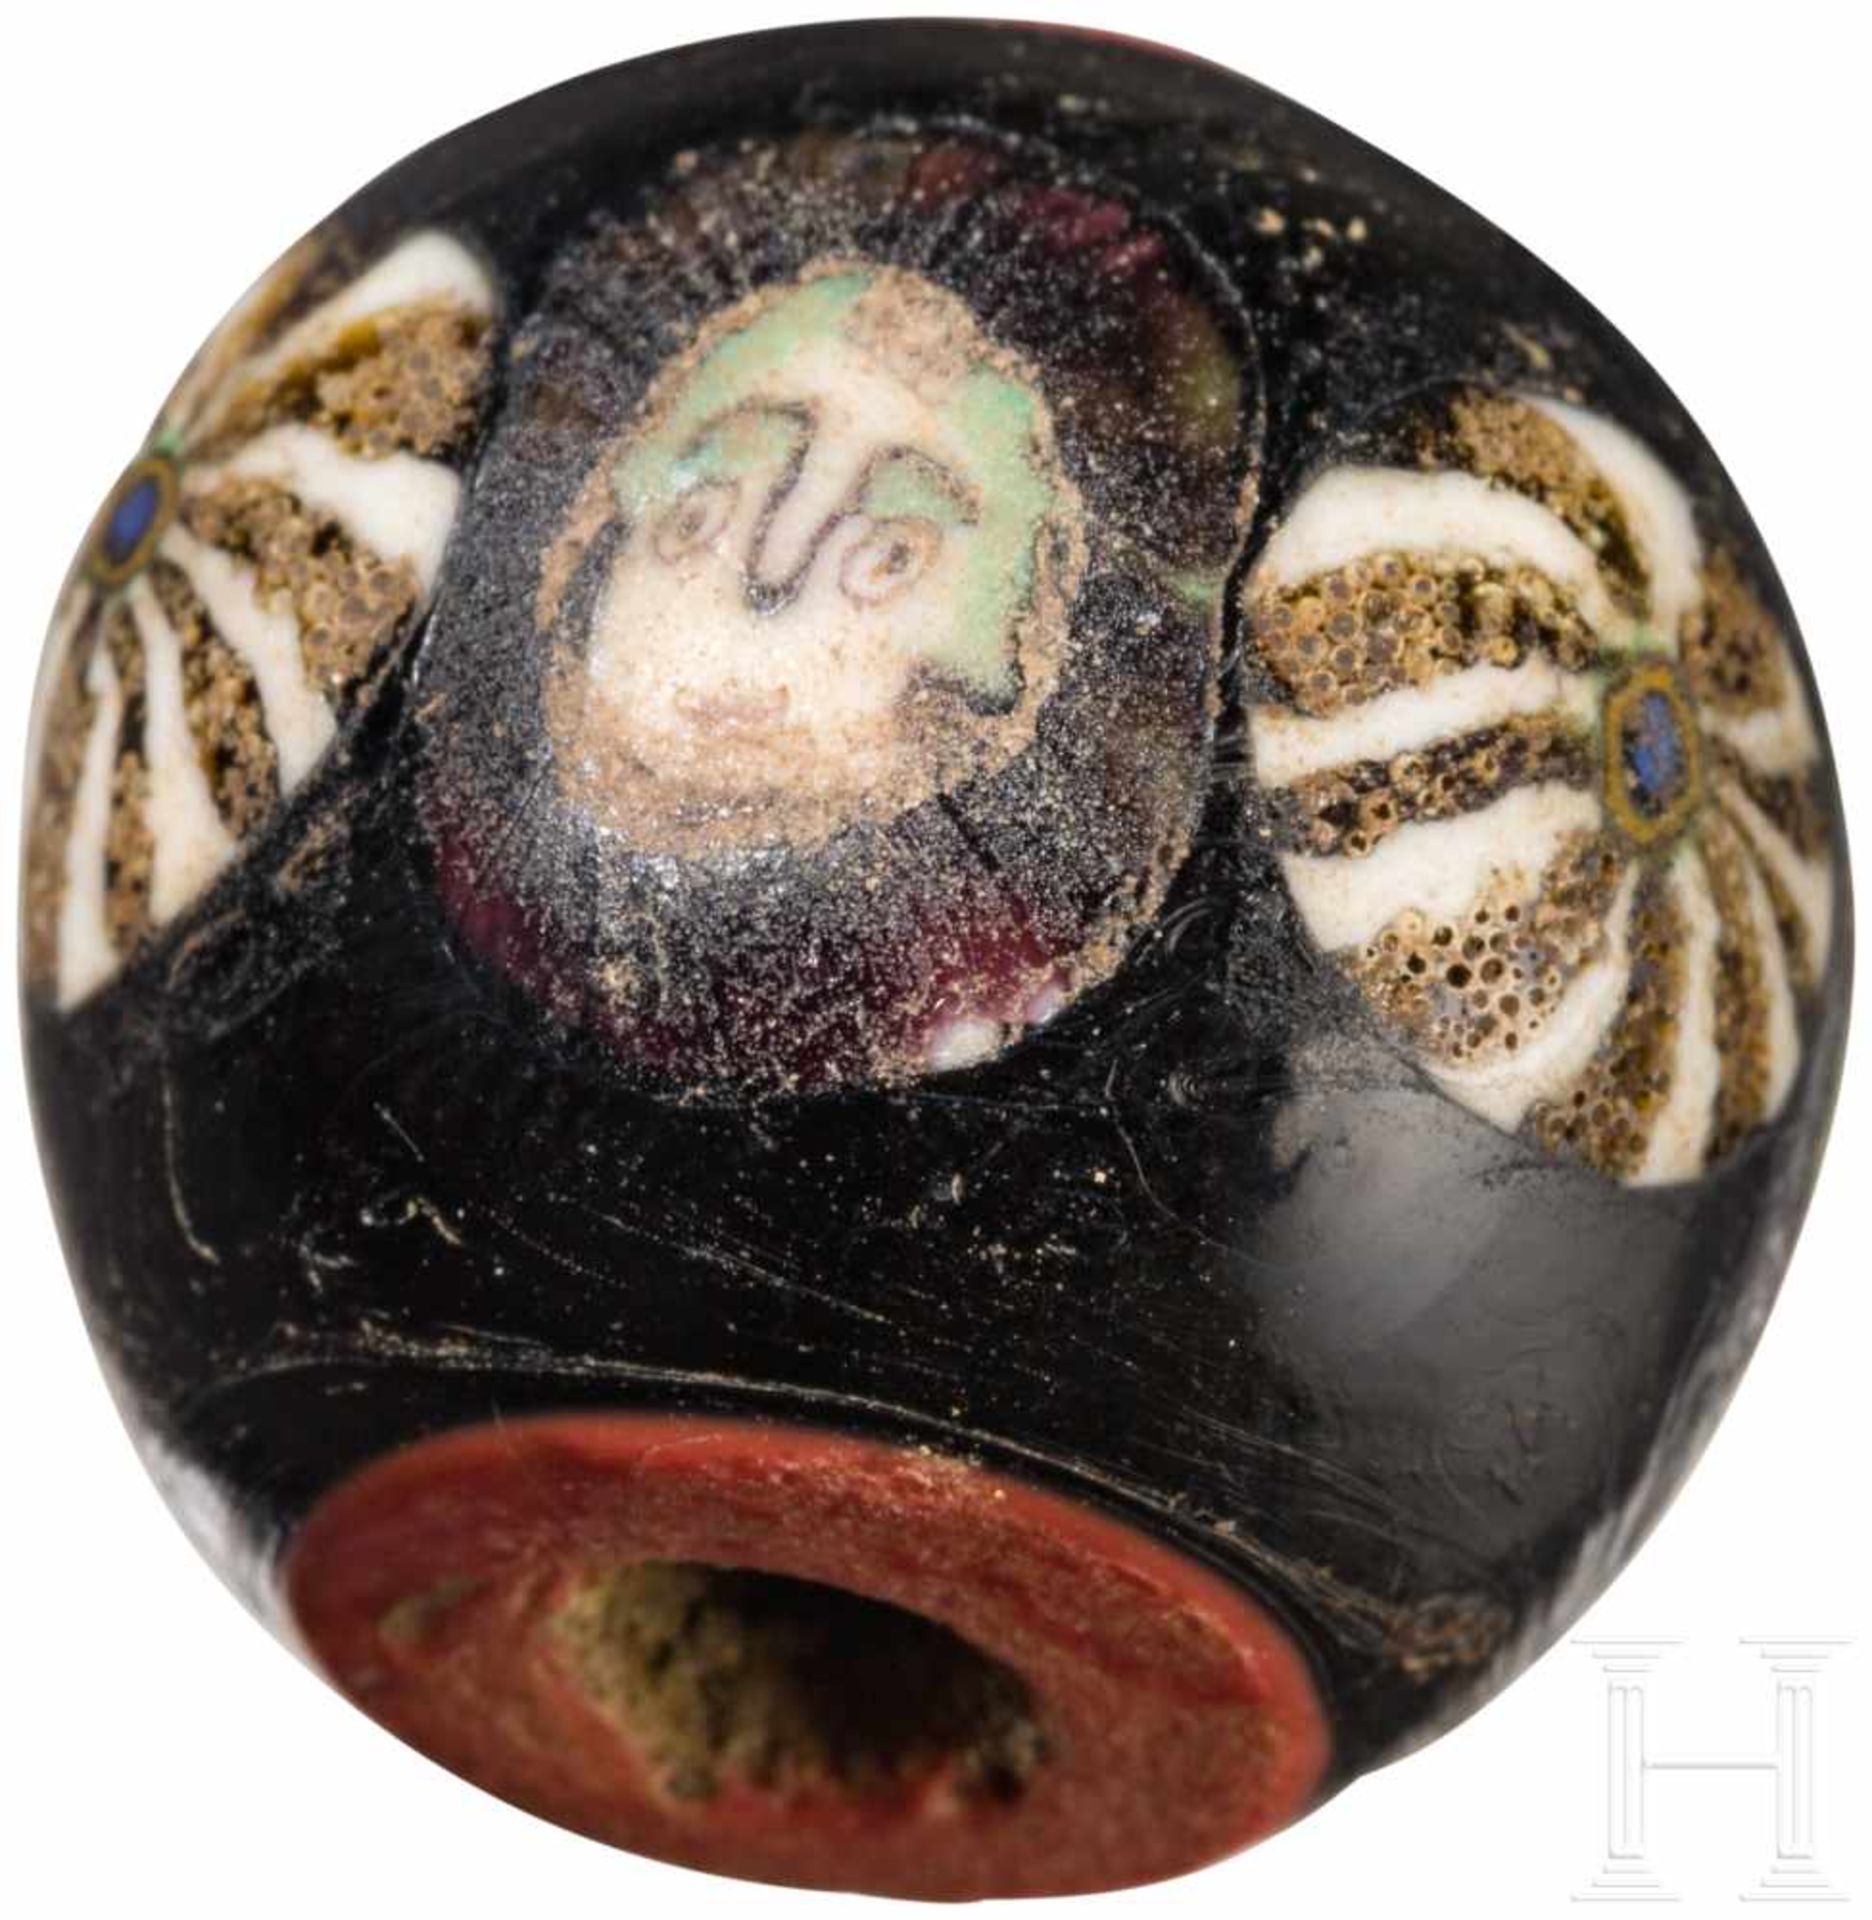 Eine Maskenperle, hellenistisch-römisch, 3. Jhdt. v. Chr. - 1. Jhdt. n. Chr.Perle aus dunklem, - Bild 2 aus 2